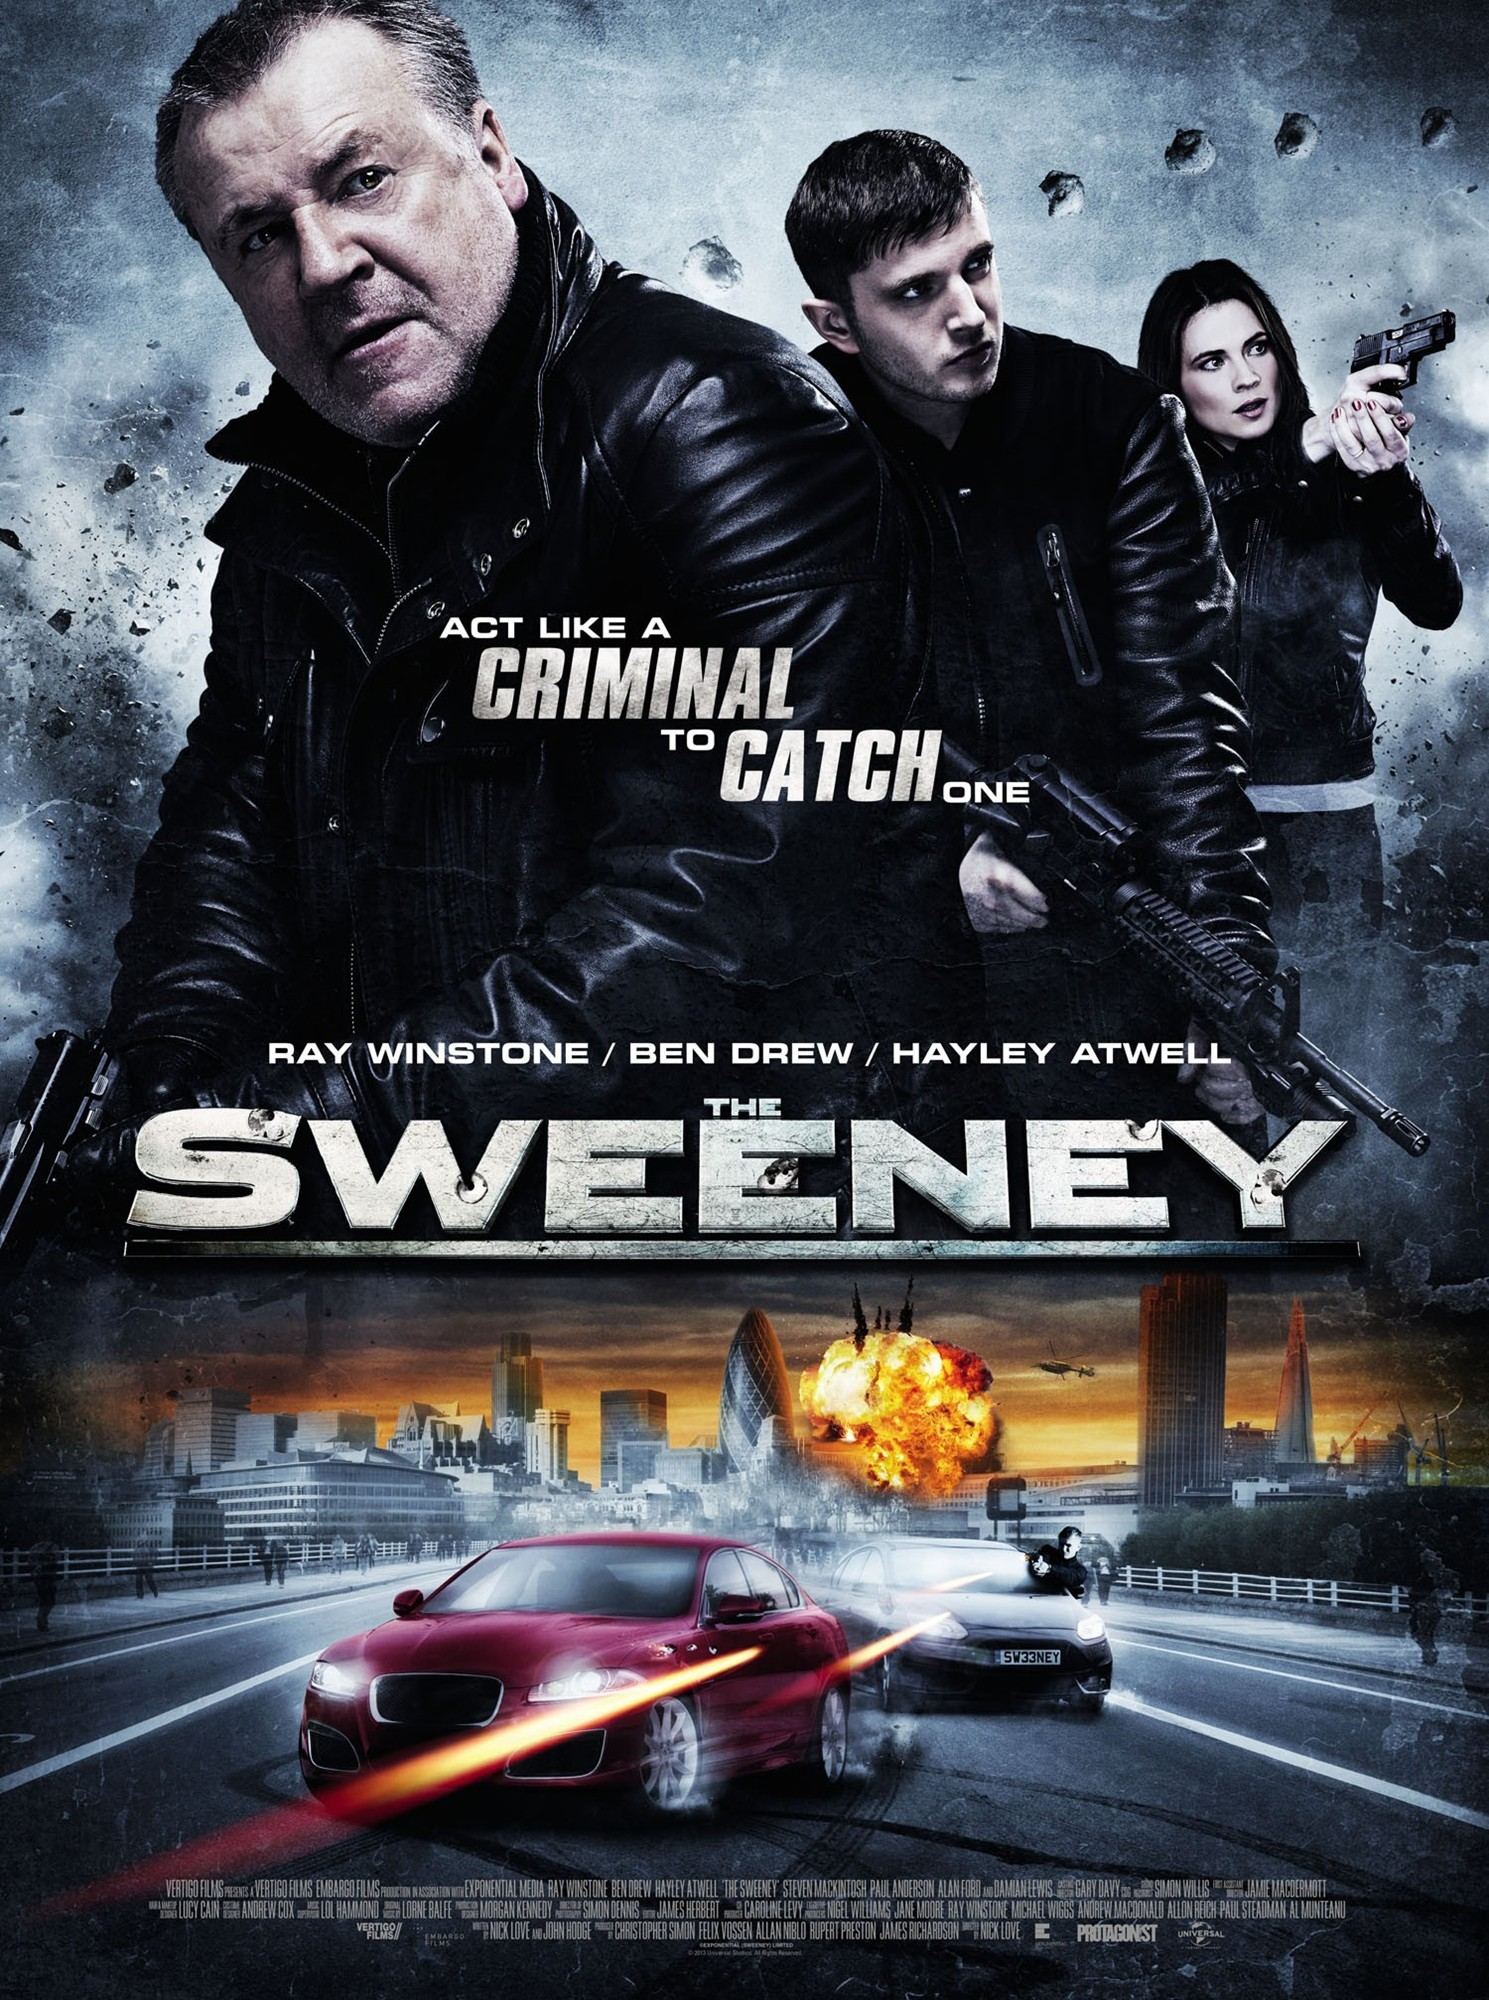 Sweeney - A törvény ereje online